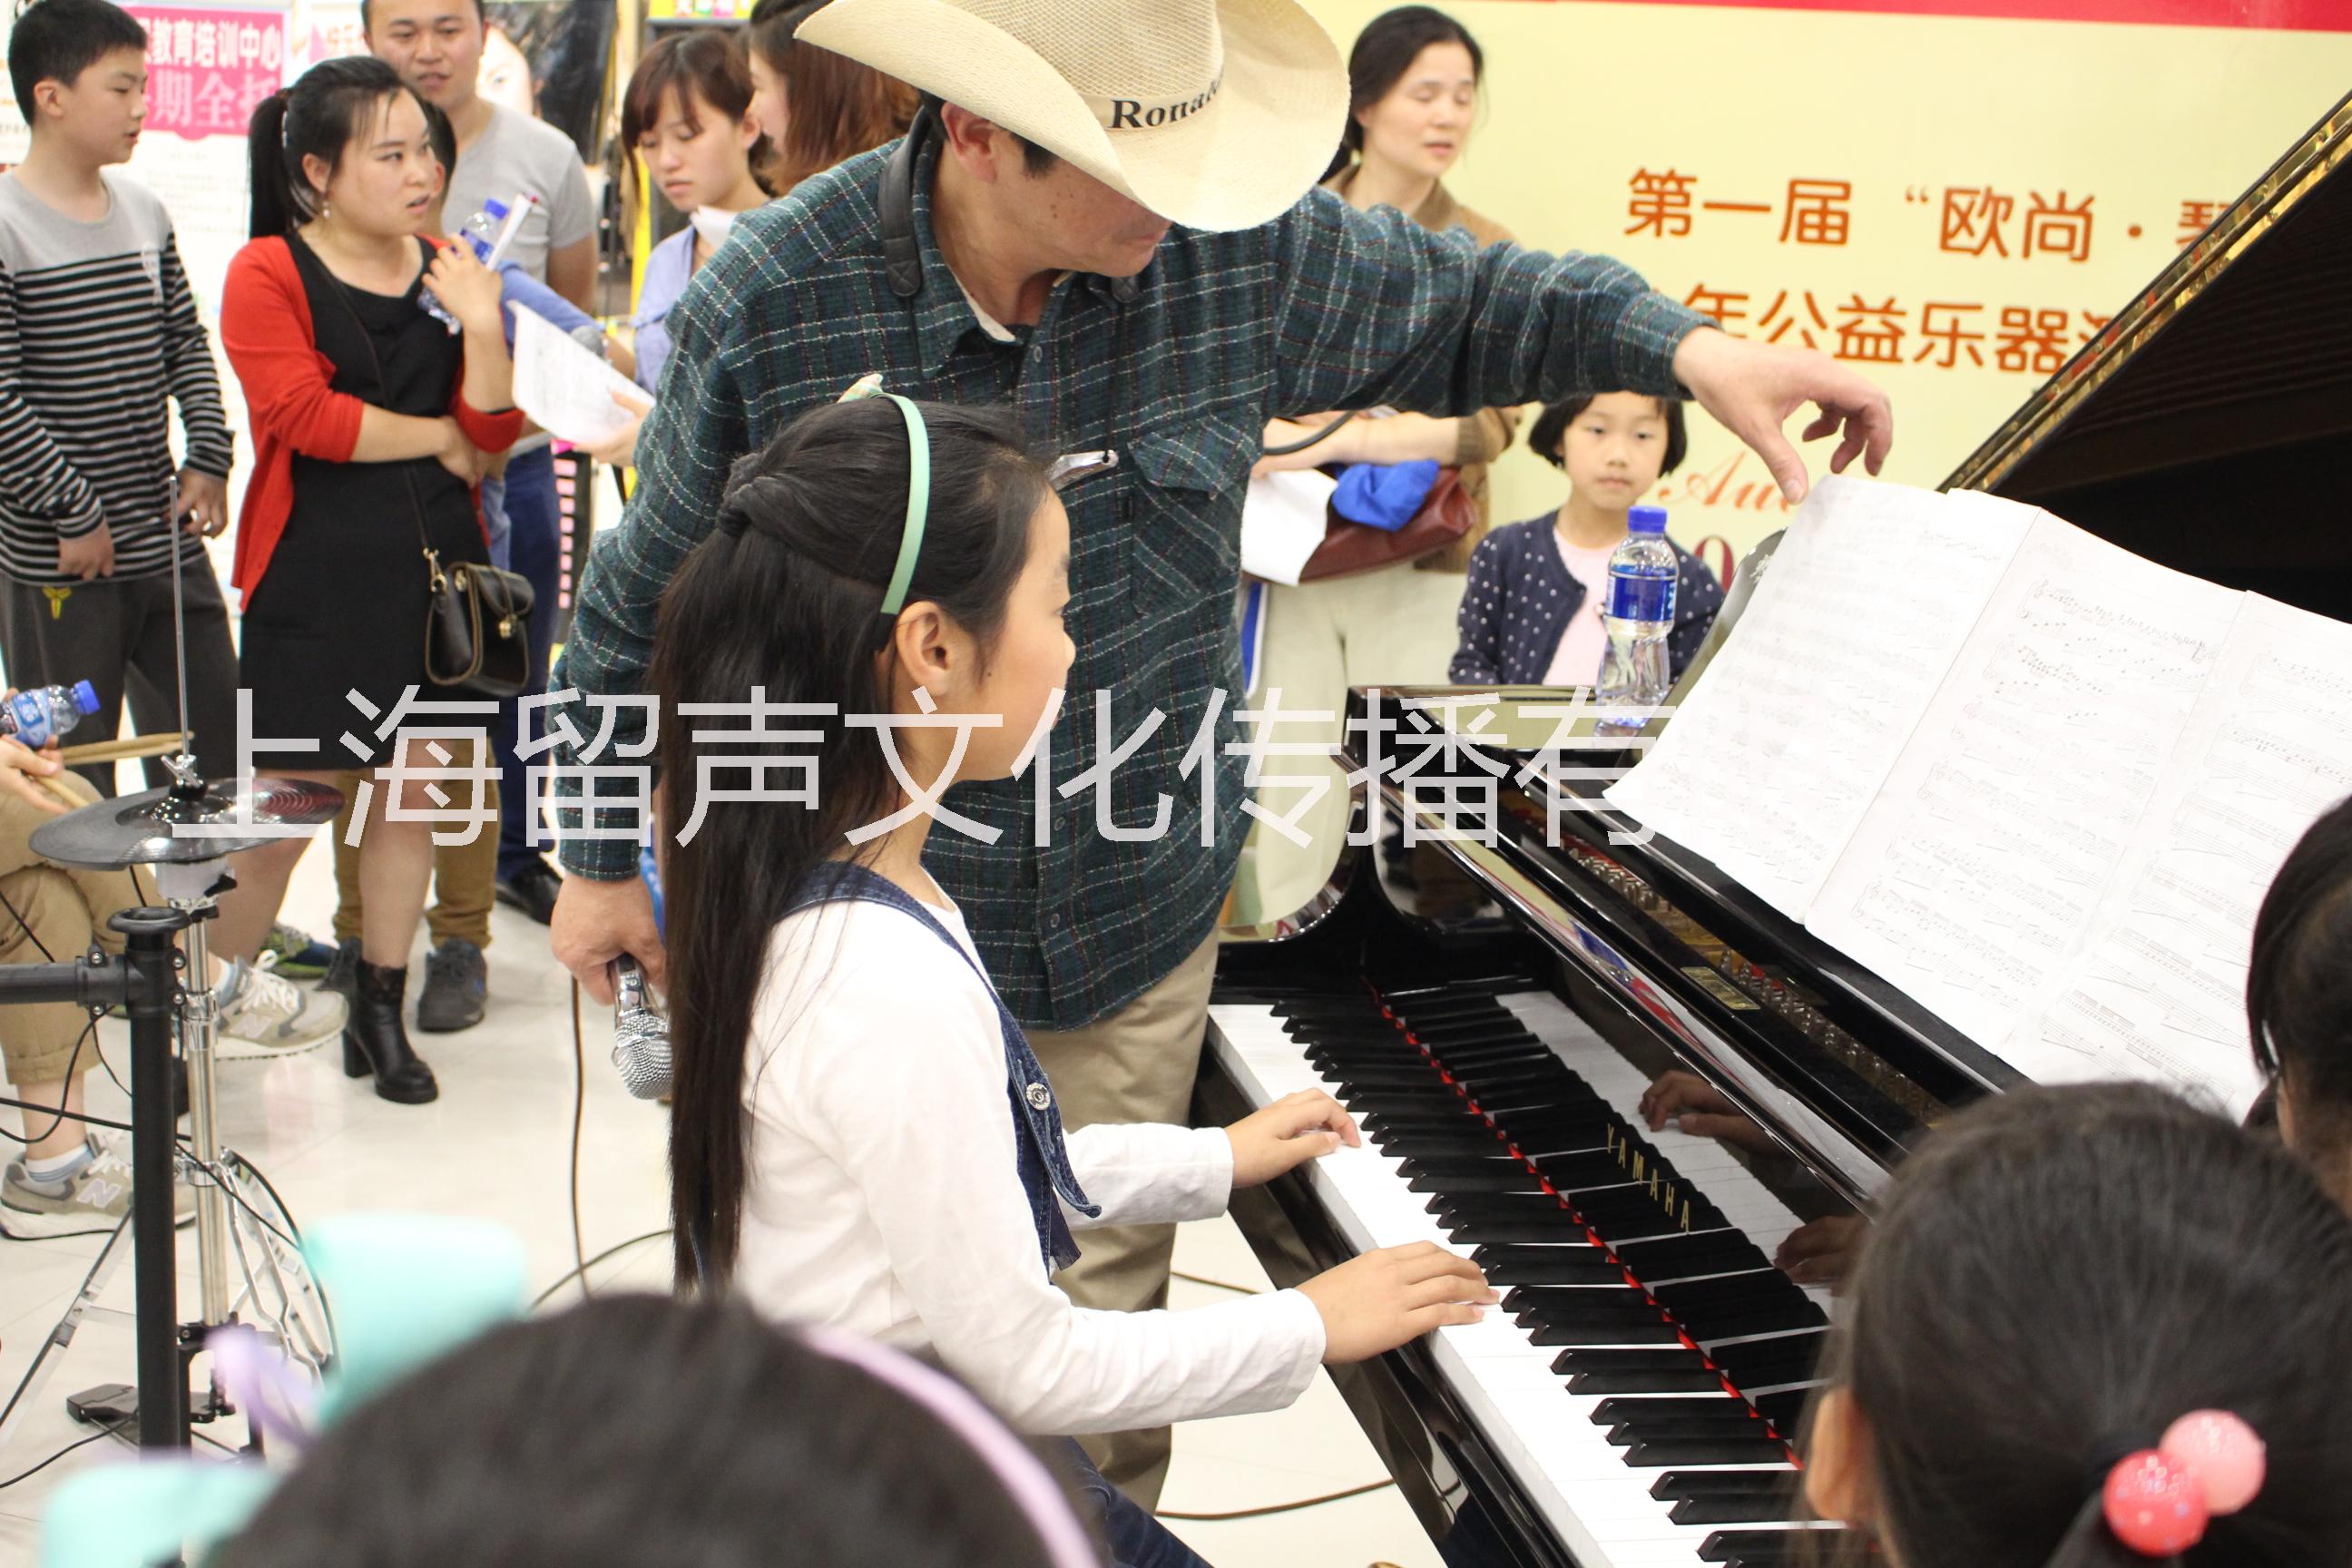 上海市学钢琴 钢琴培训班厂家供应学钢琴 钢琴培训班